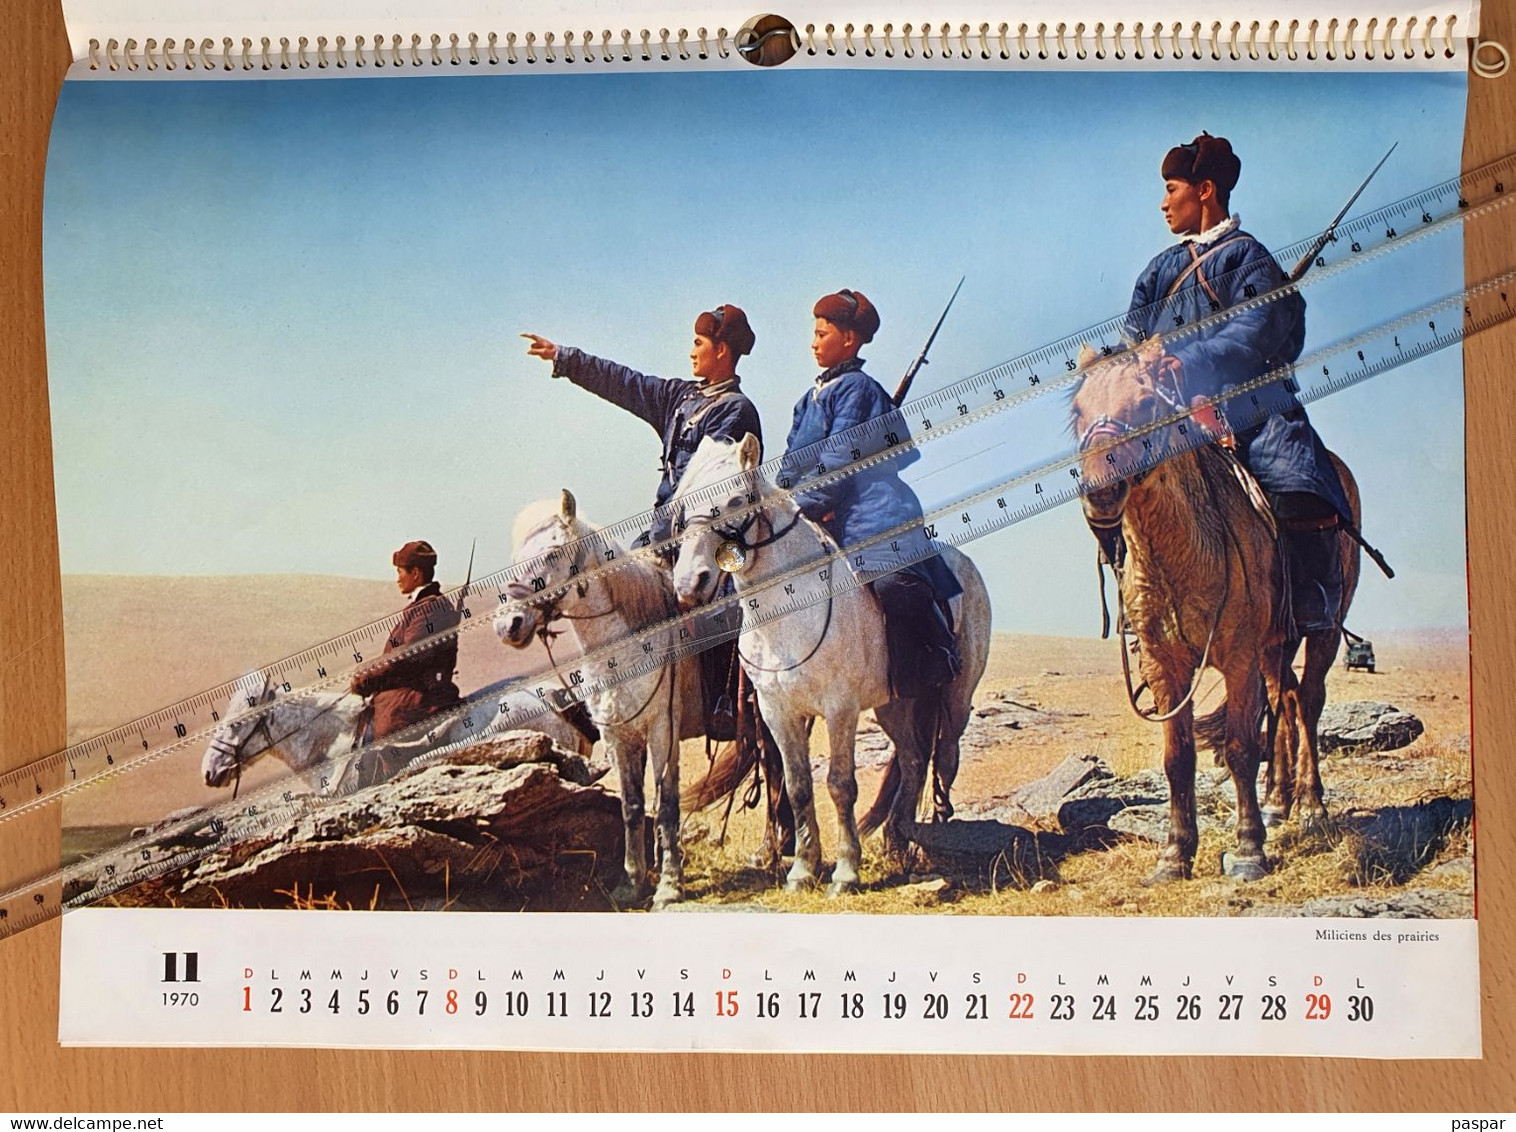 Calendrier de 1970 Chine - Propagande éditée par la Chine - Hommage de Guozi Shudian -, Mao Tsétoung